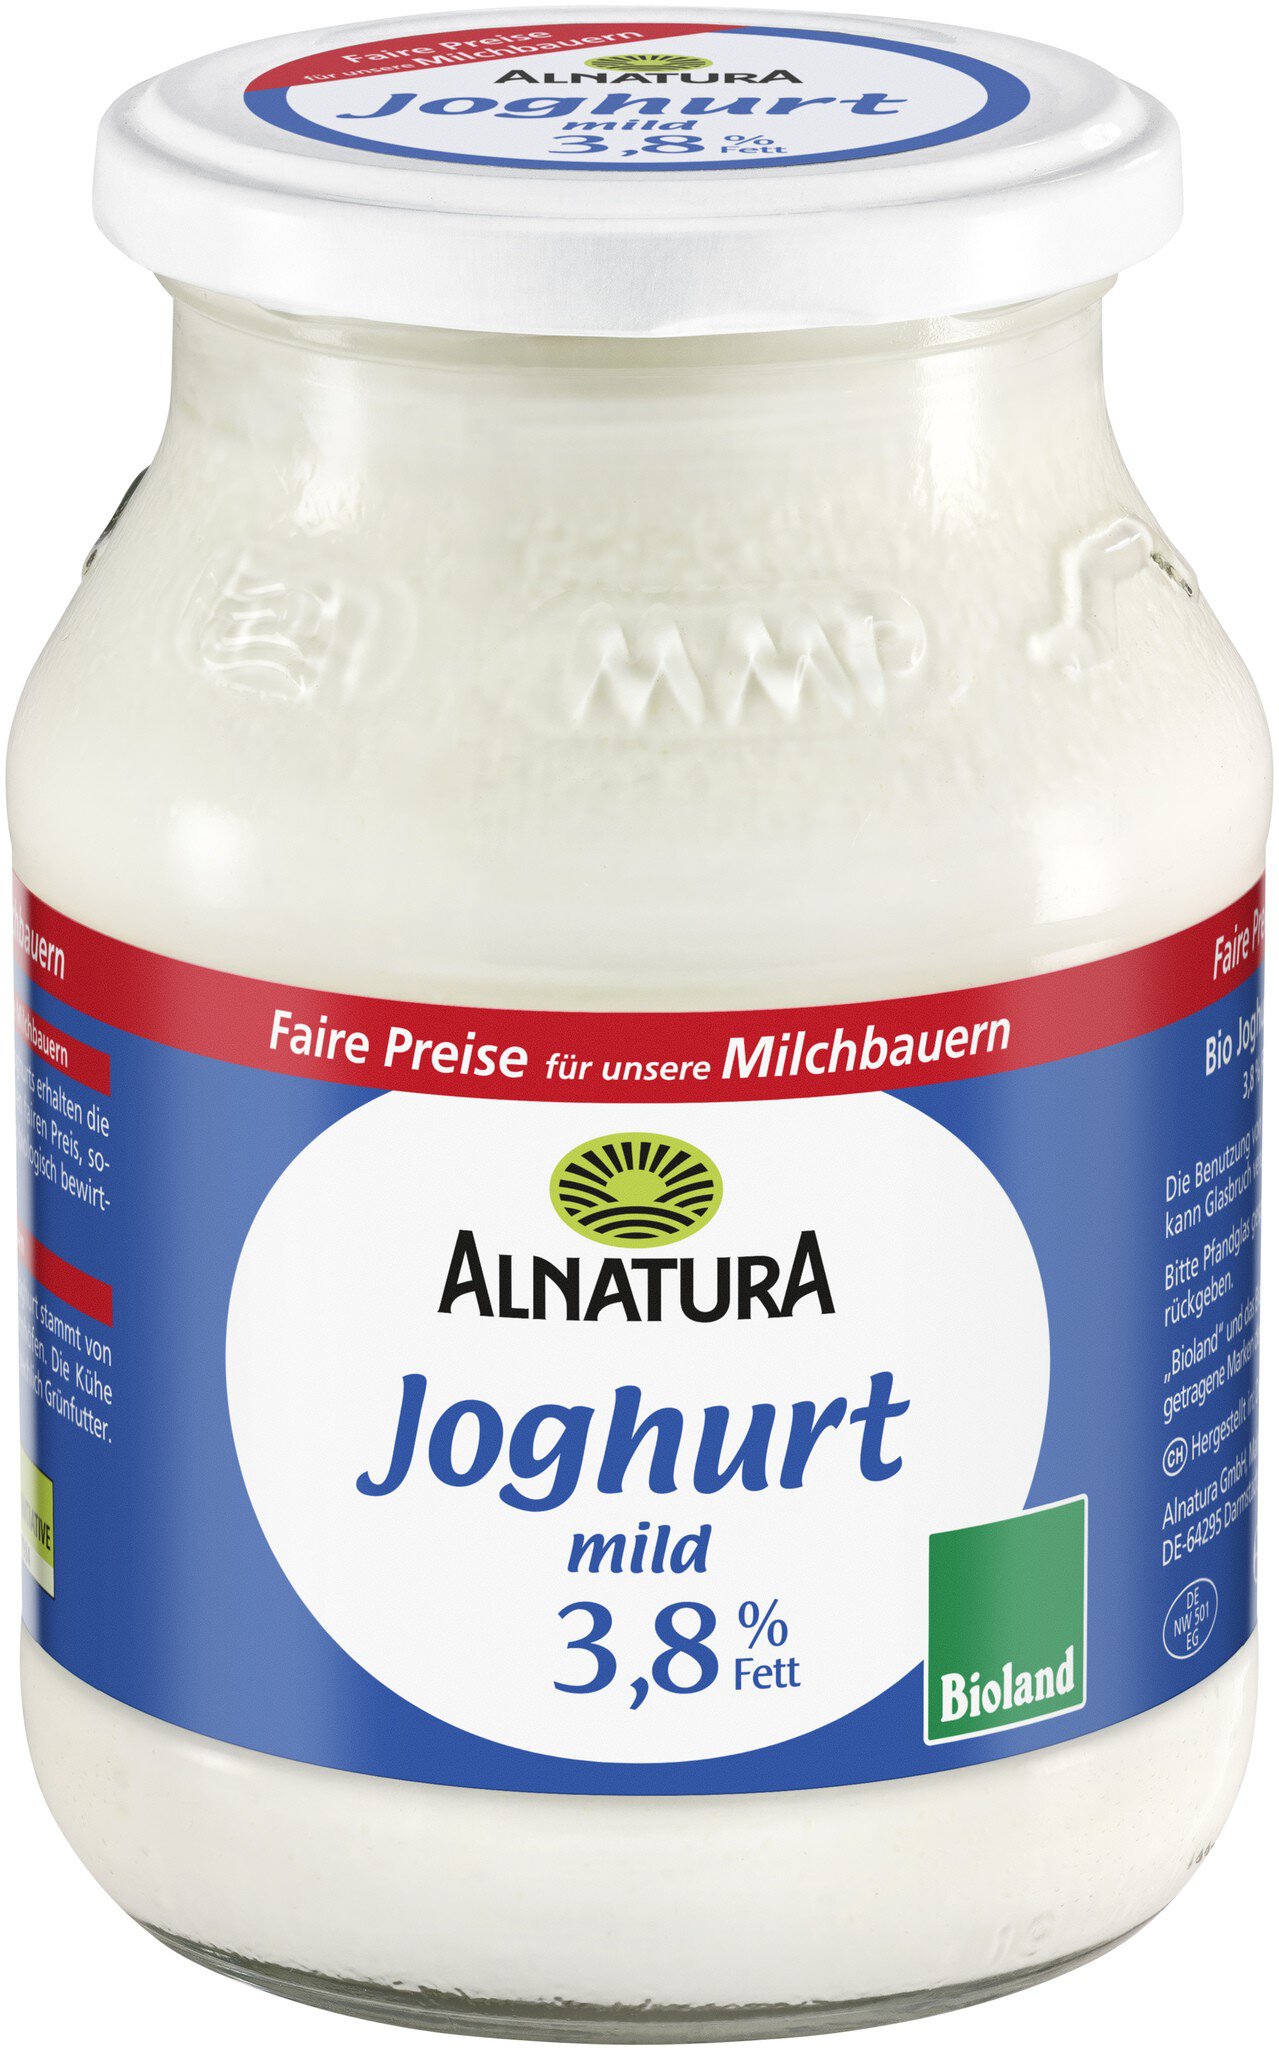 Joghurt mild 3,8 g) Fett von Bio-Qualität % Alnatura in (500